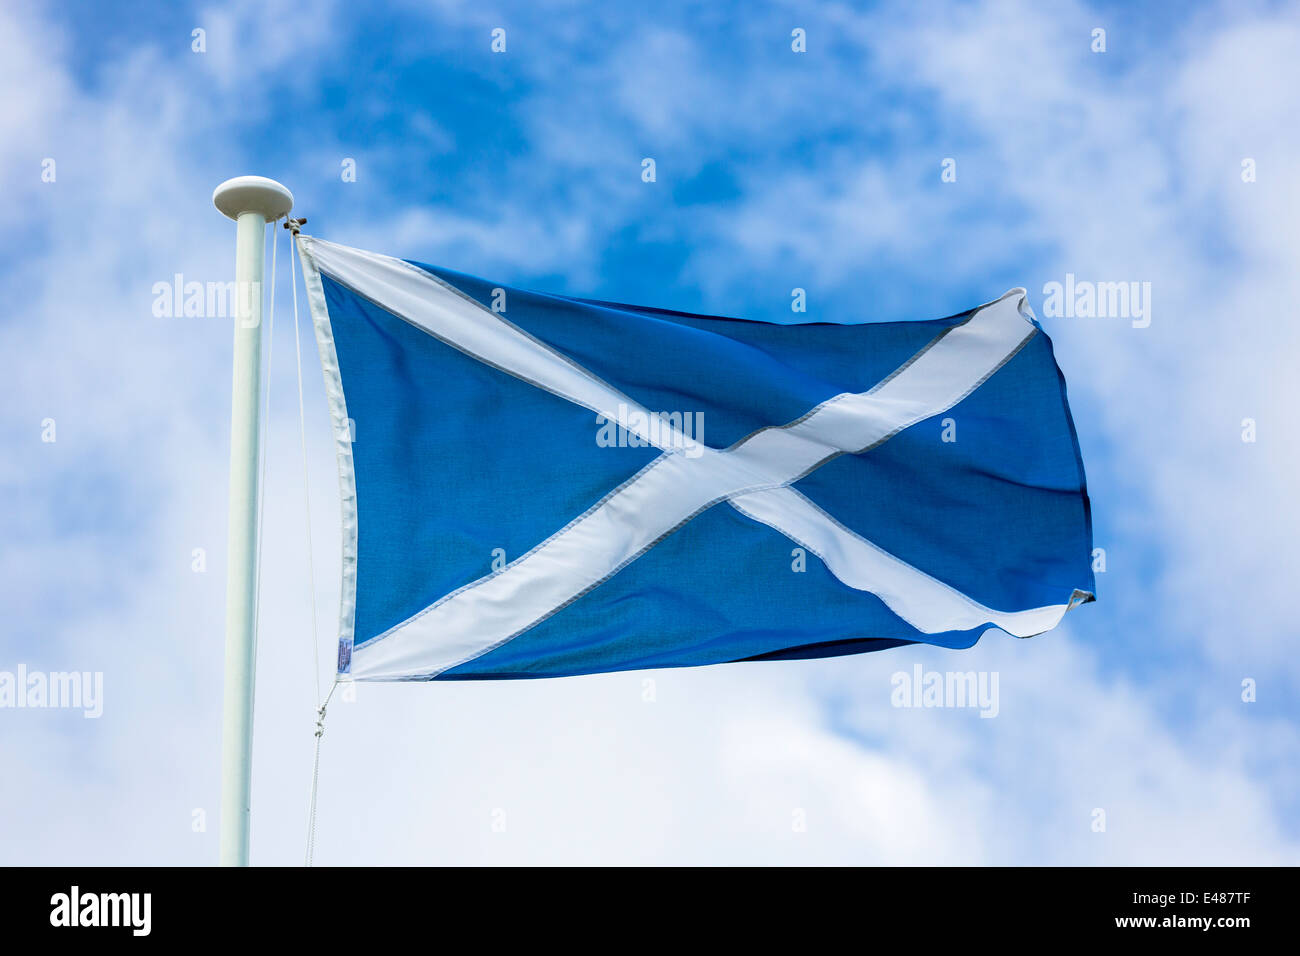 Si intraversa bandiera di St Andrew battenti da pennone come referendum scozzese Indipendenza la campagna invita gli elettori sì votare per la Scozia Foto Stock